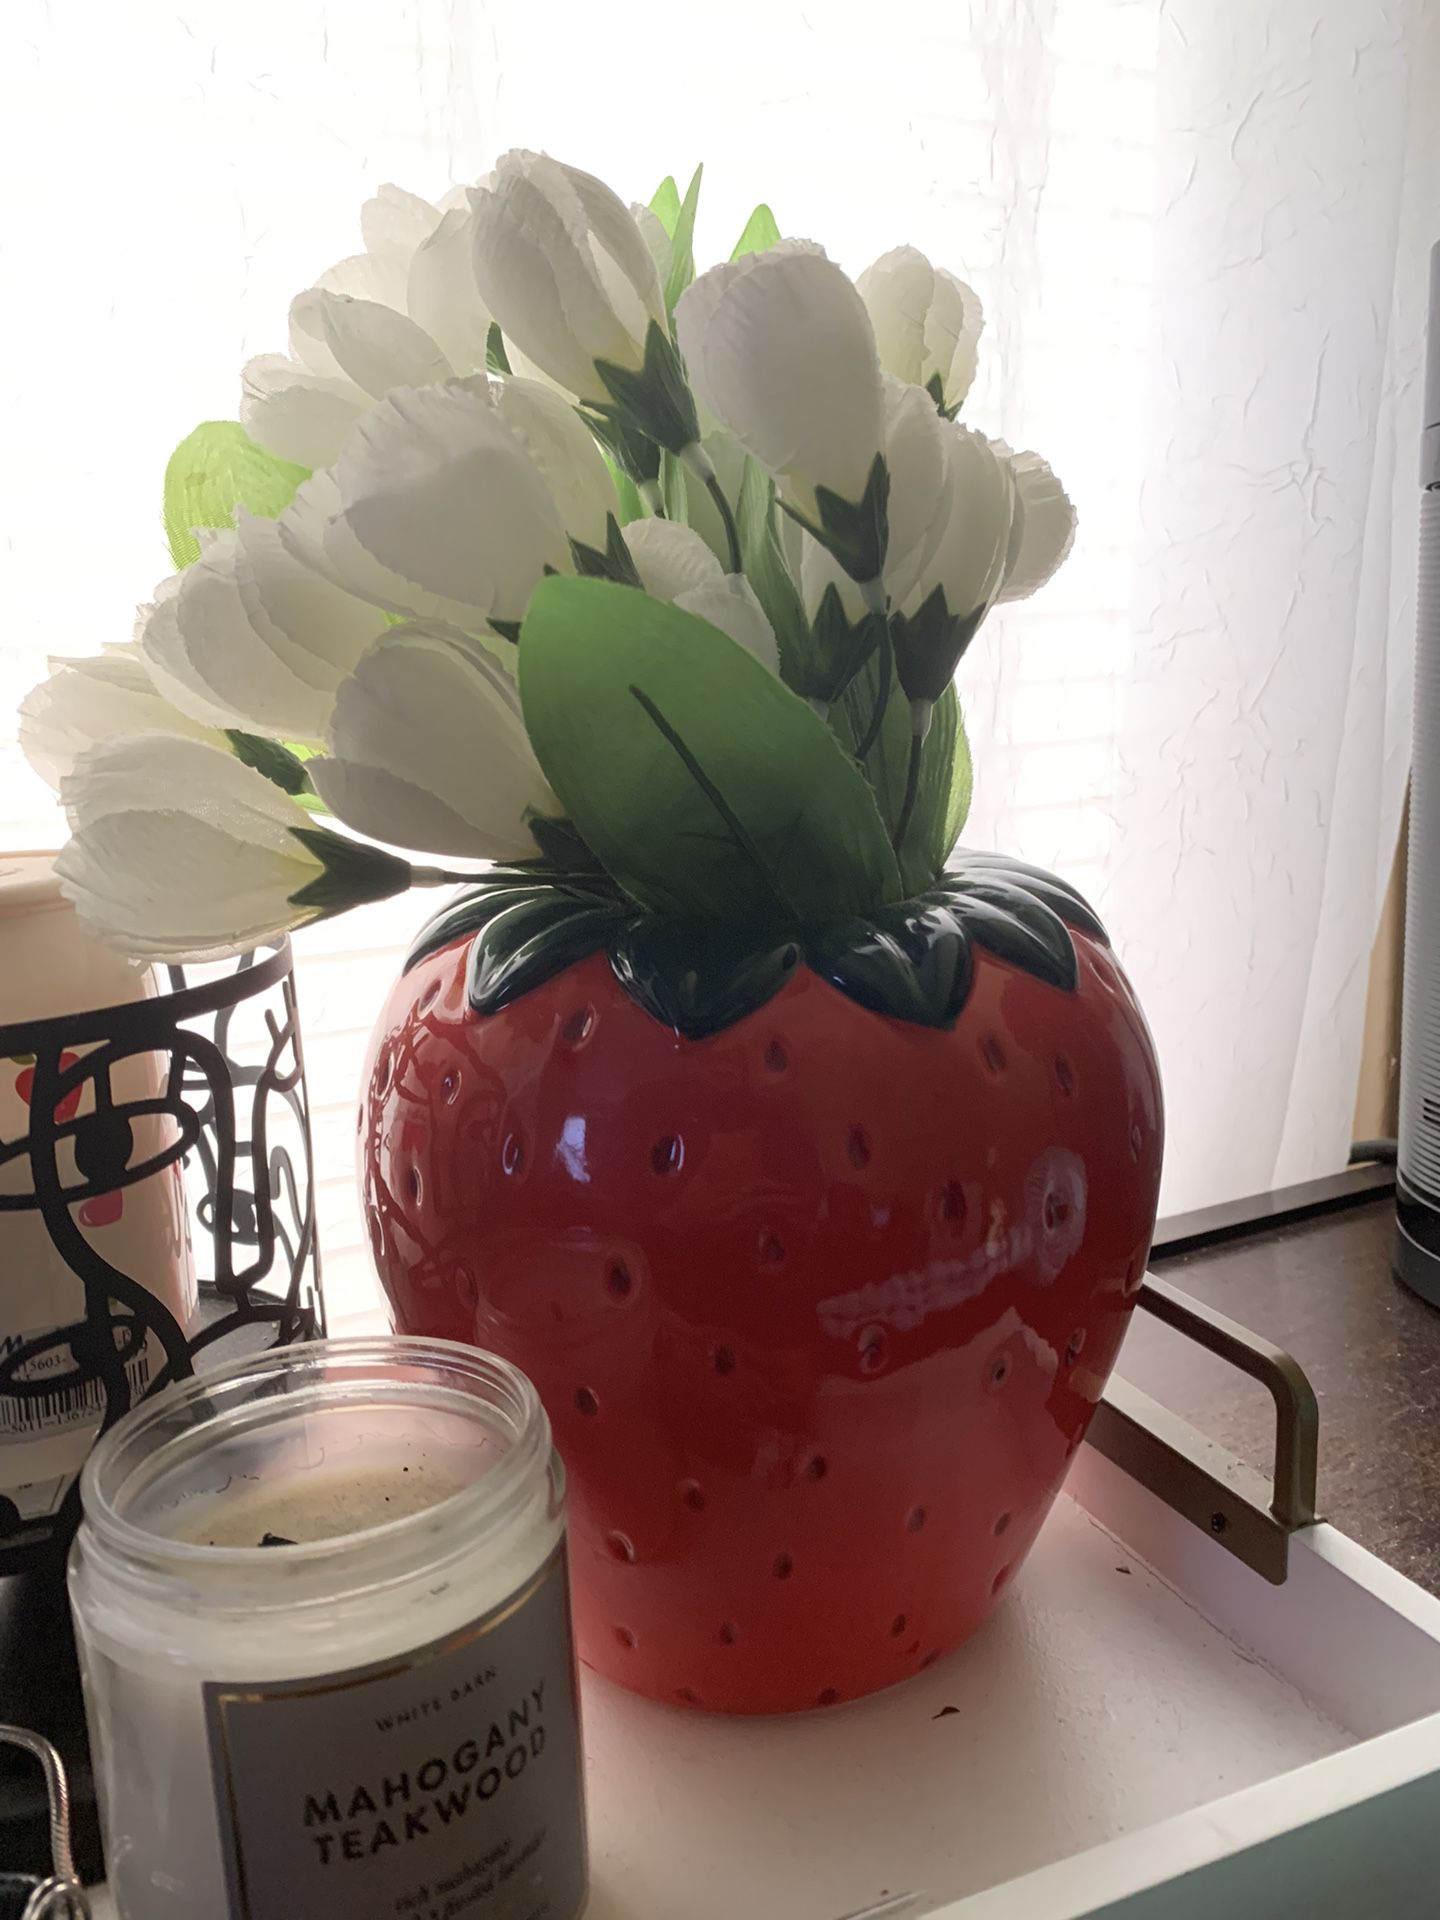 Strawberry Flower Vase 